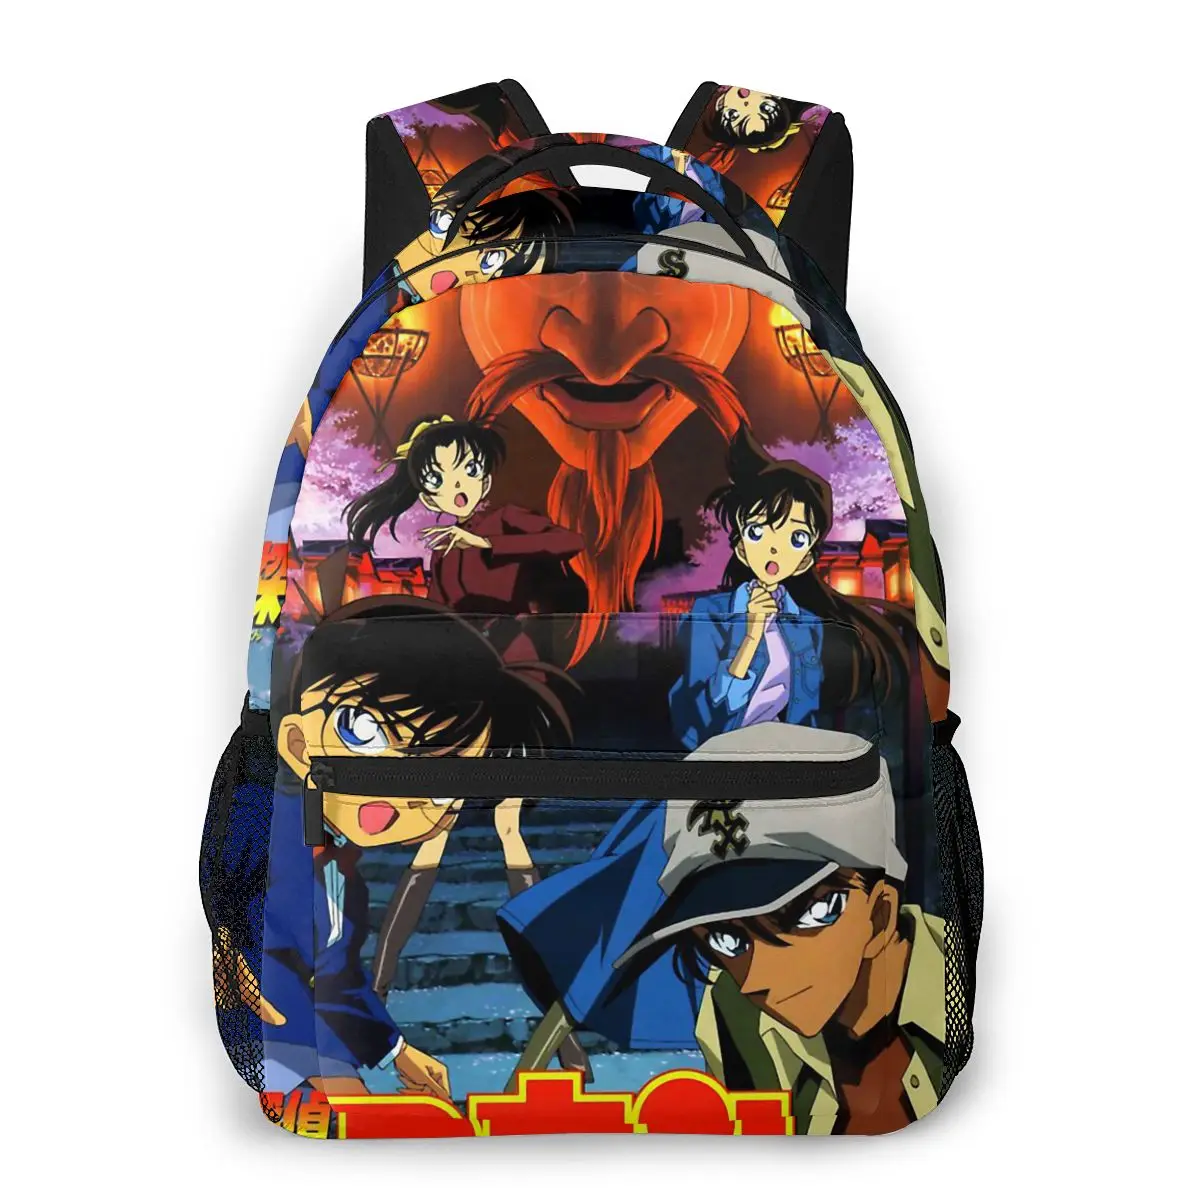 

Модный рюкзак аниме Детектив Конан японская манга для девочек подростков сумка на плечо новая сумка для начальной школы для женщин и мальчиков